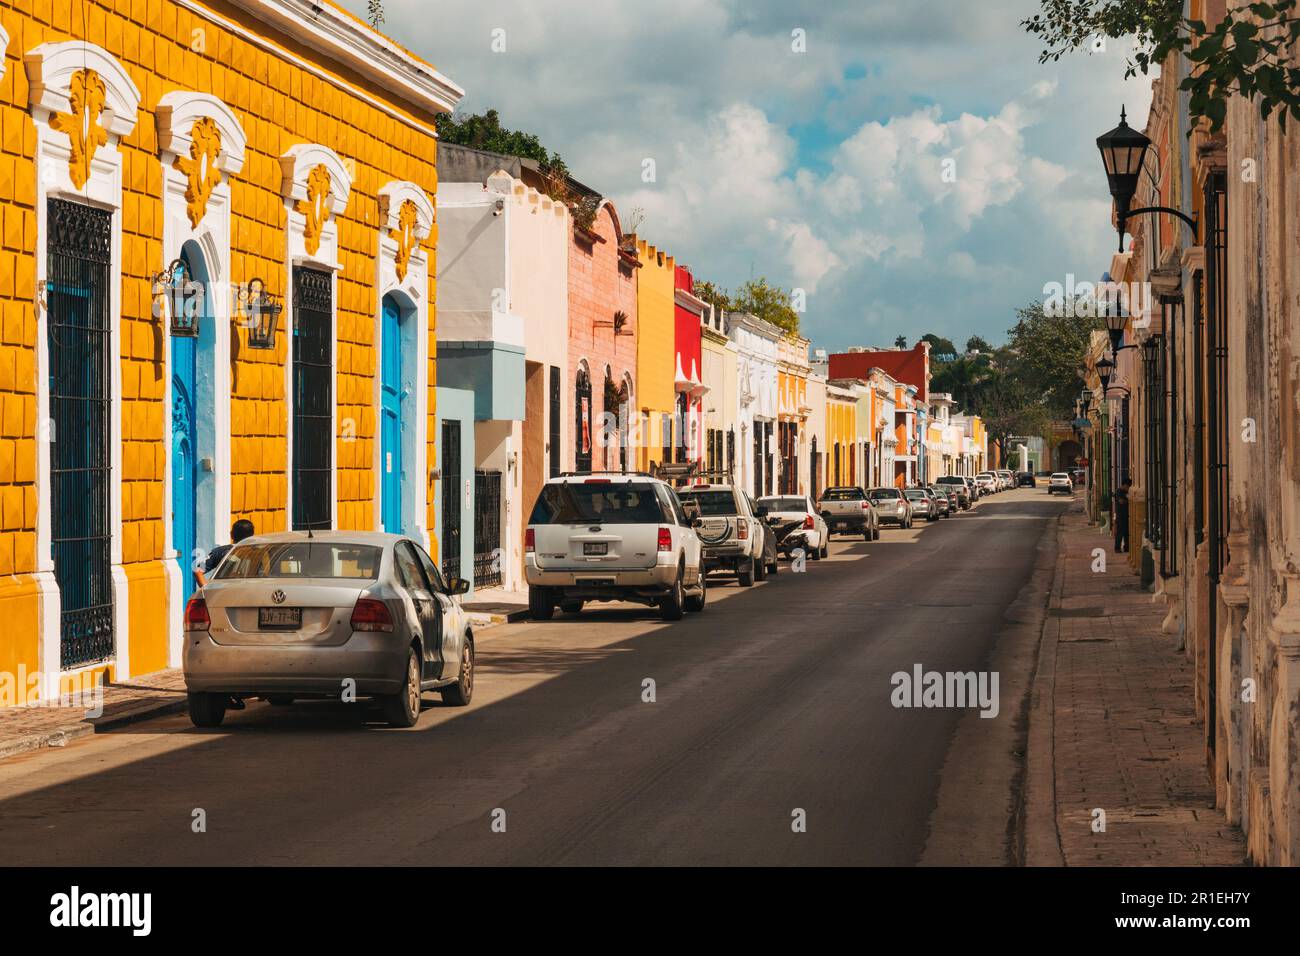 Bâtiments coloniaux espagnols peints dans diverses couleurs vives dans le centre historique de la ville de Campeche, au Mexique Banque D'Images